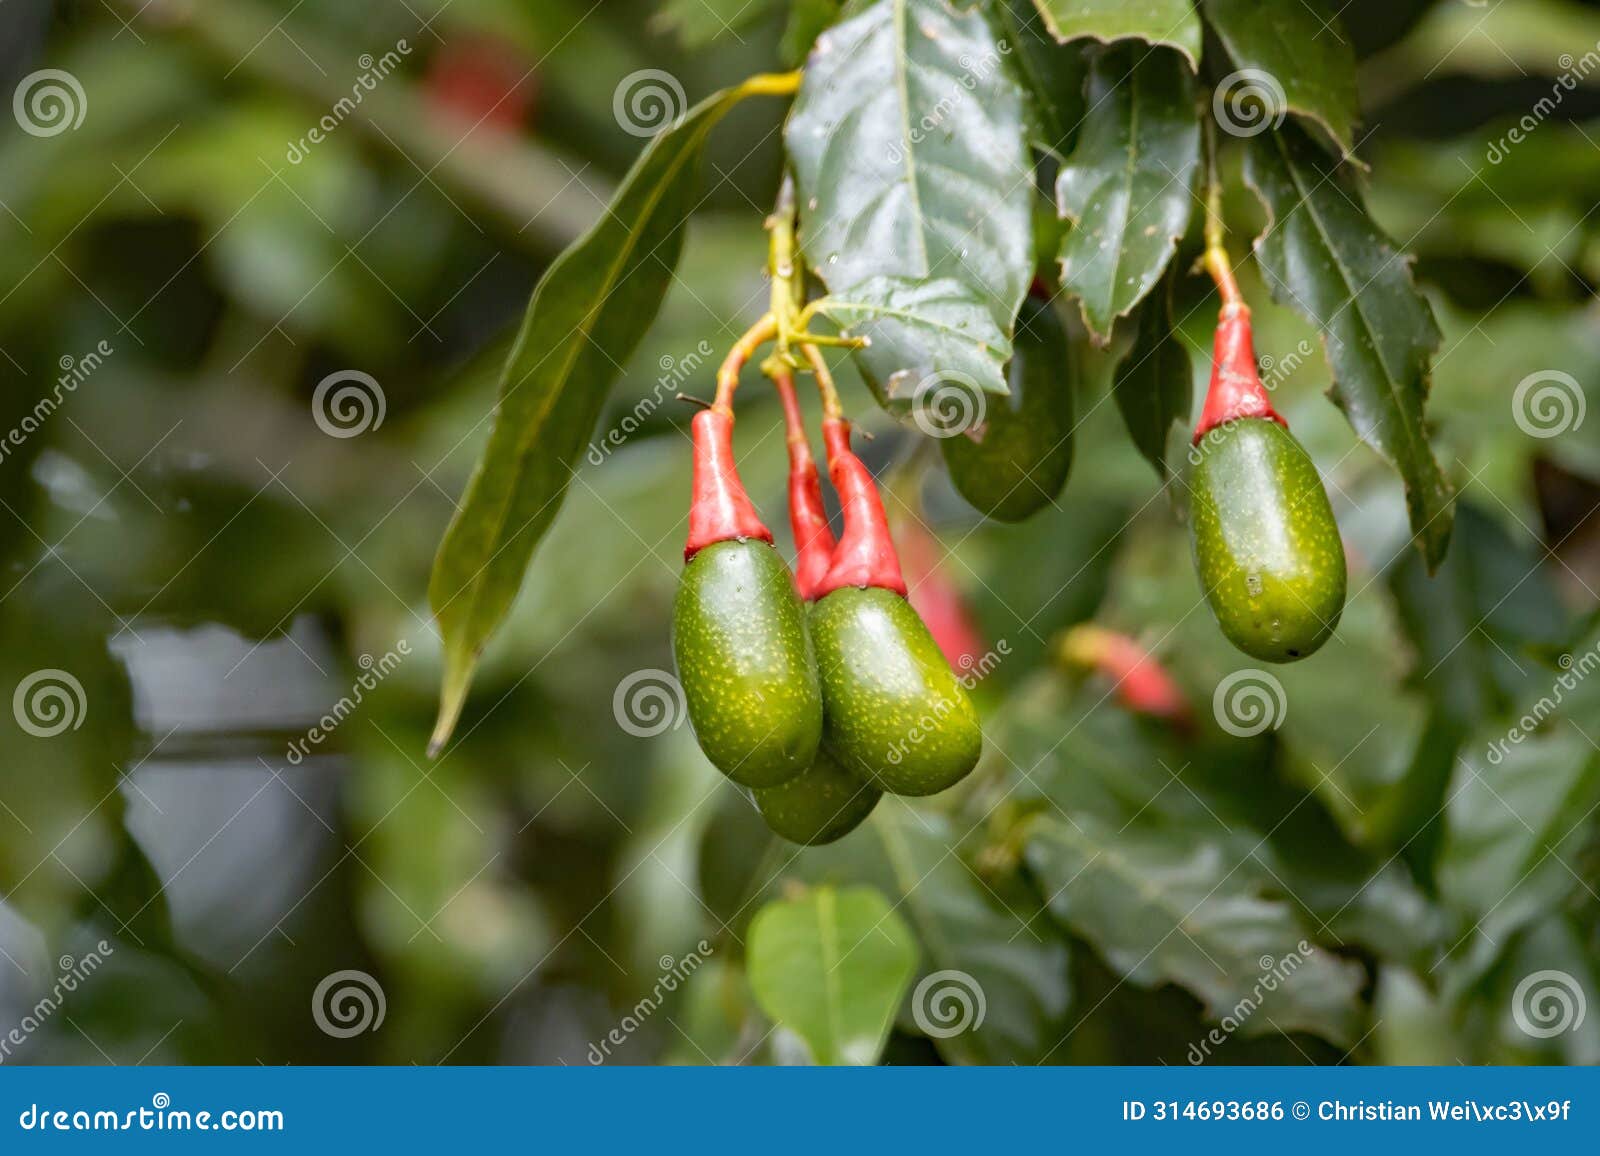 fruits of an ocotea tenera tree